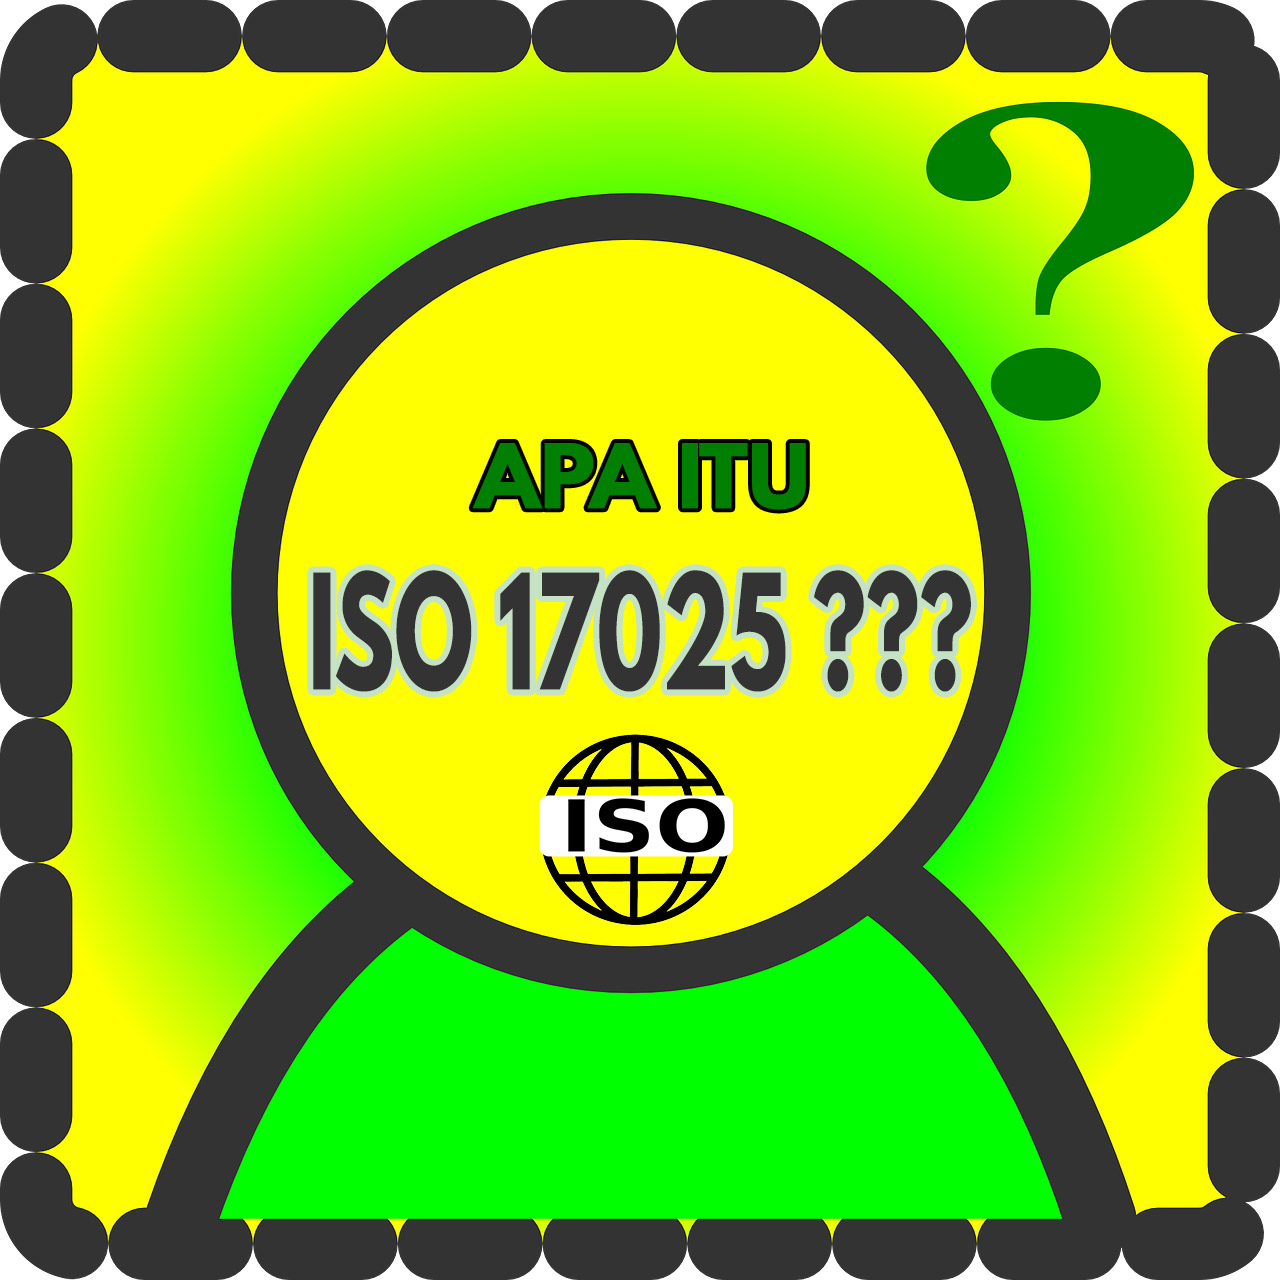 APA ITU ISO 17025 : Inilah Penjelasan Lengkapnya - Labmutu.com